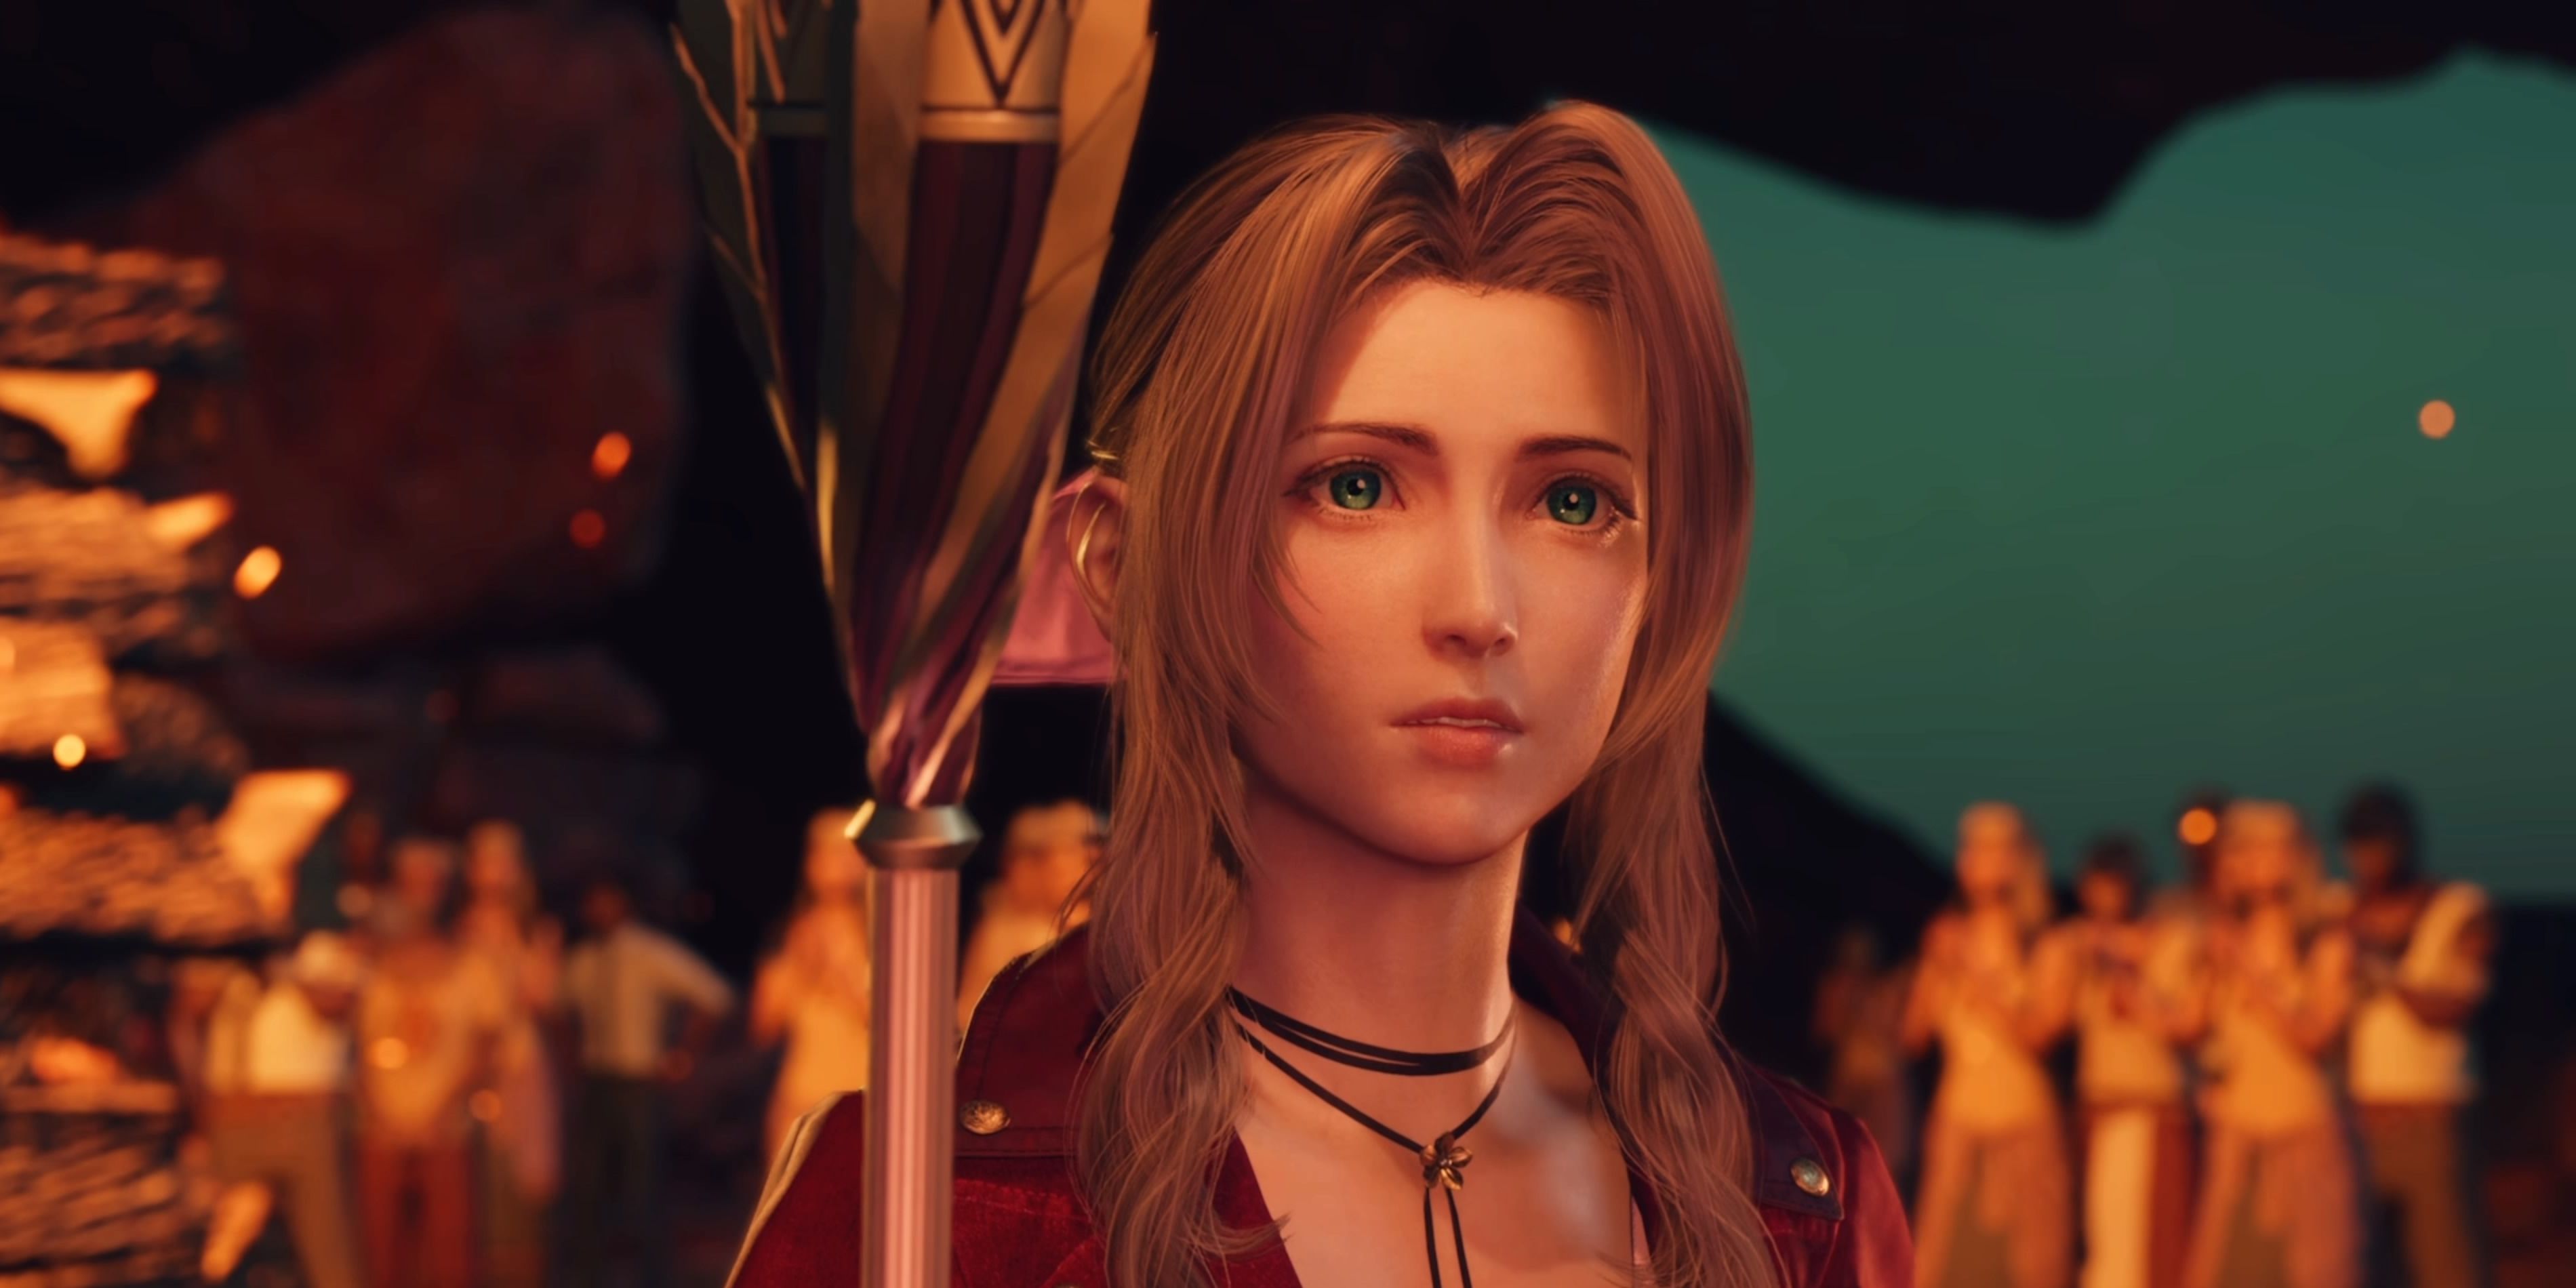 Final Fantasy 7 Rebirth: Aerith Romance Guide